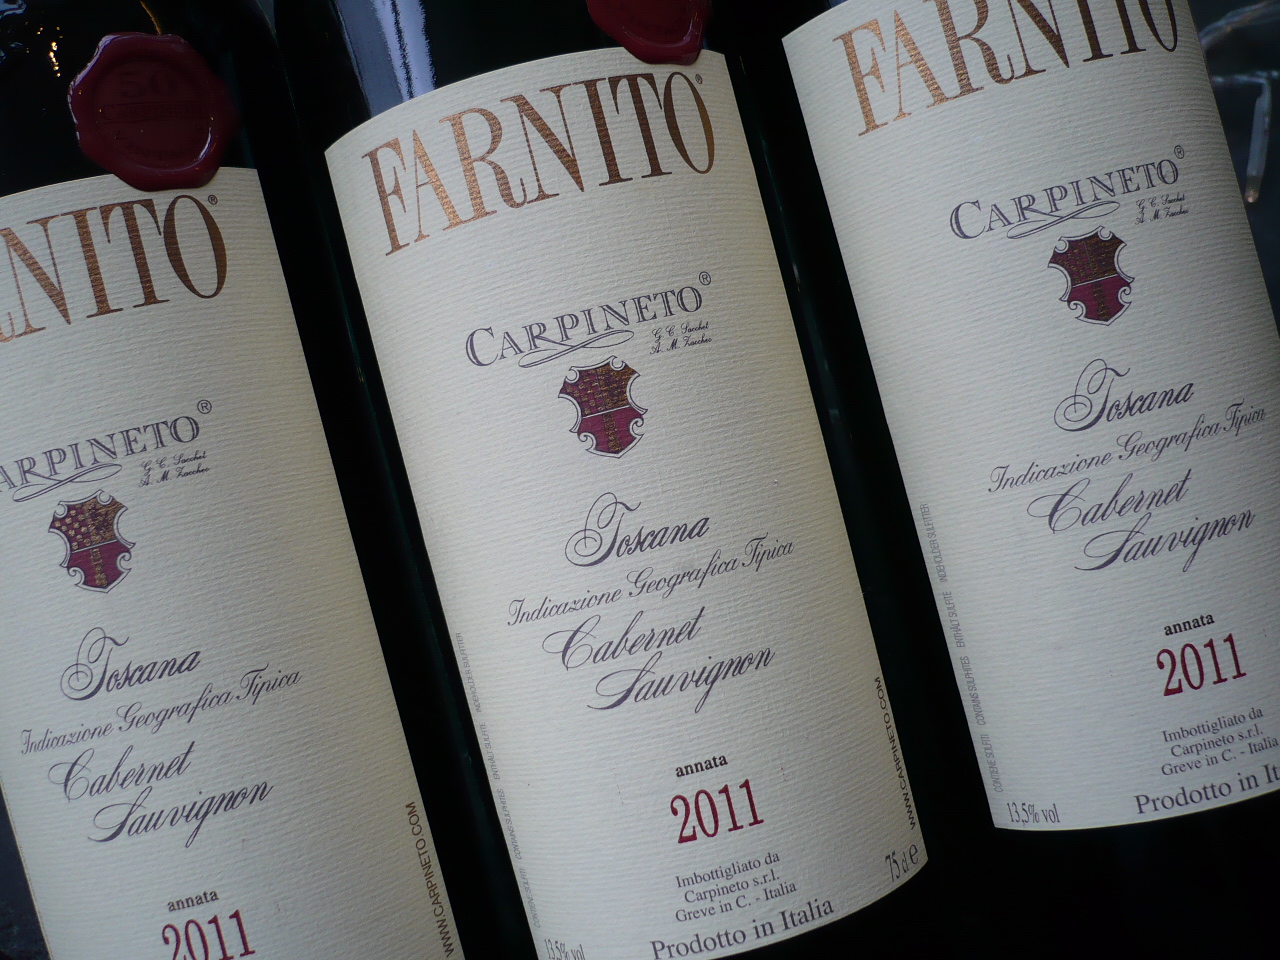 2011er CABERNET-SAUVIGNON Farnito igt, Carpineto -0,75l-